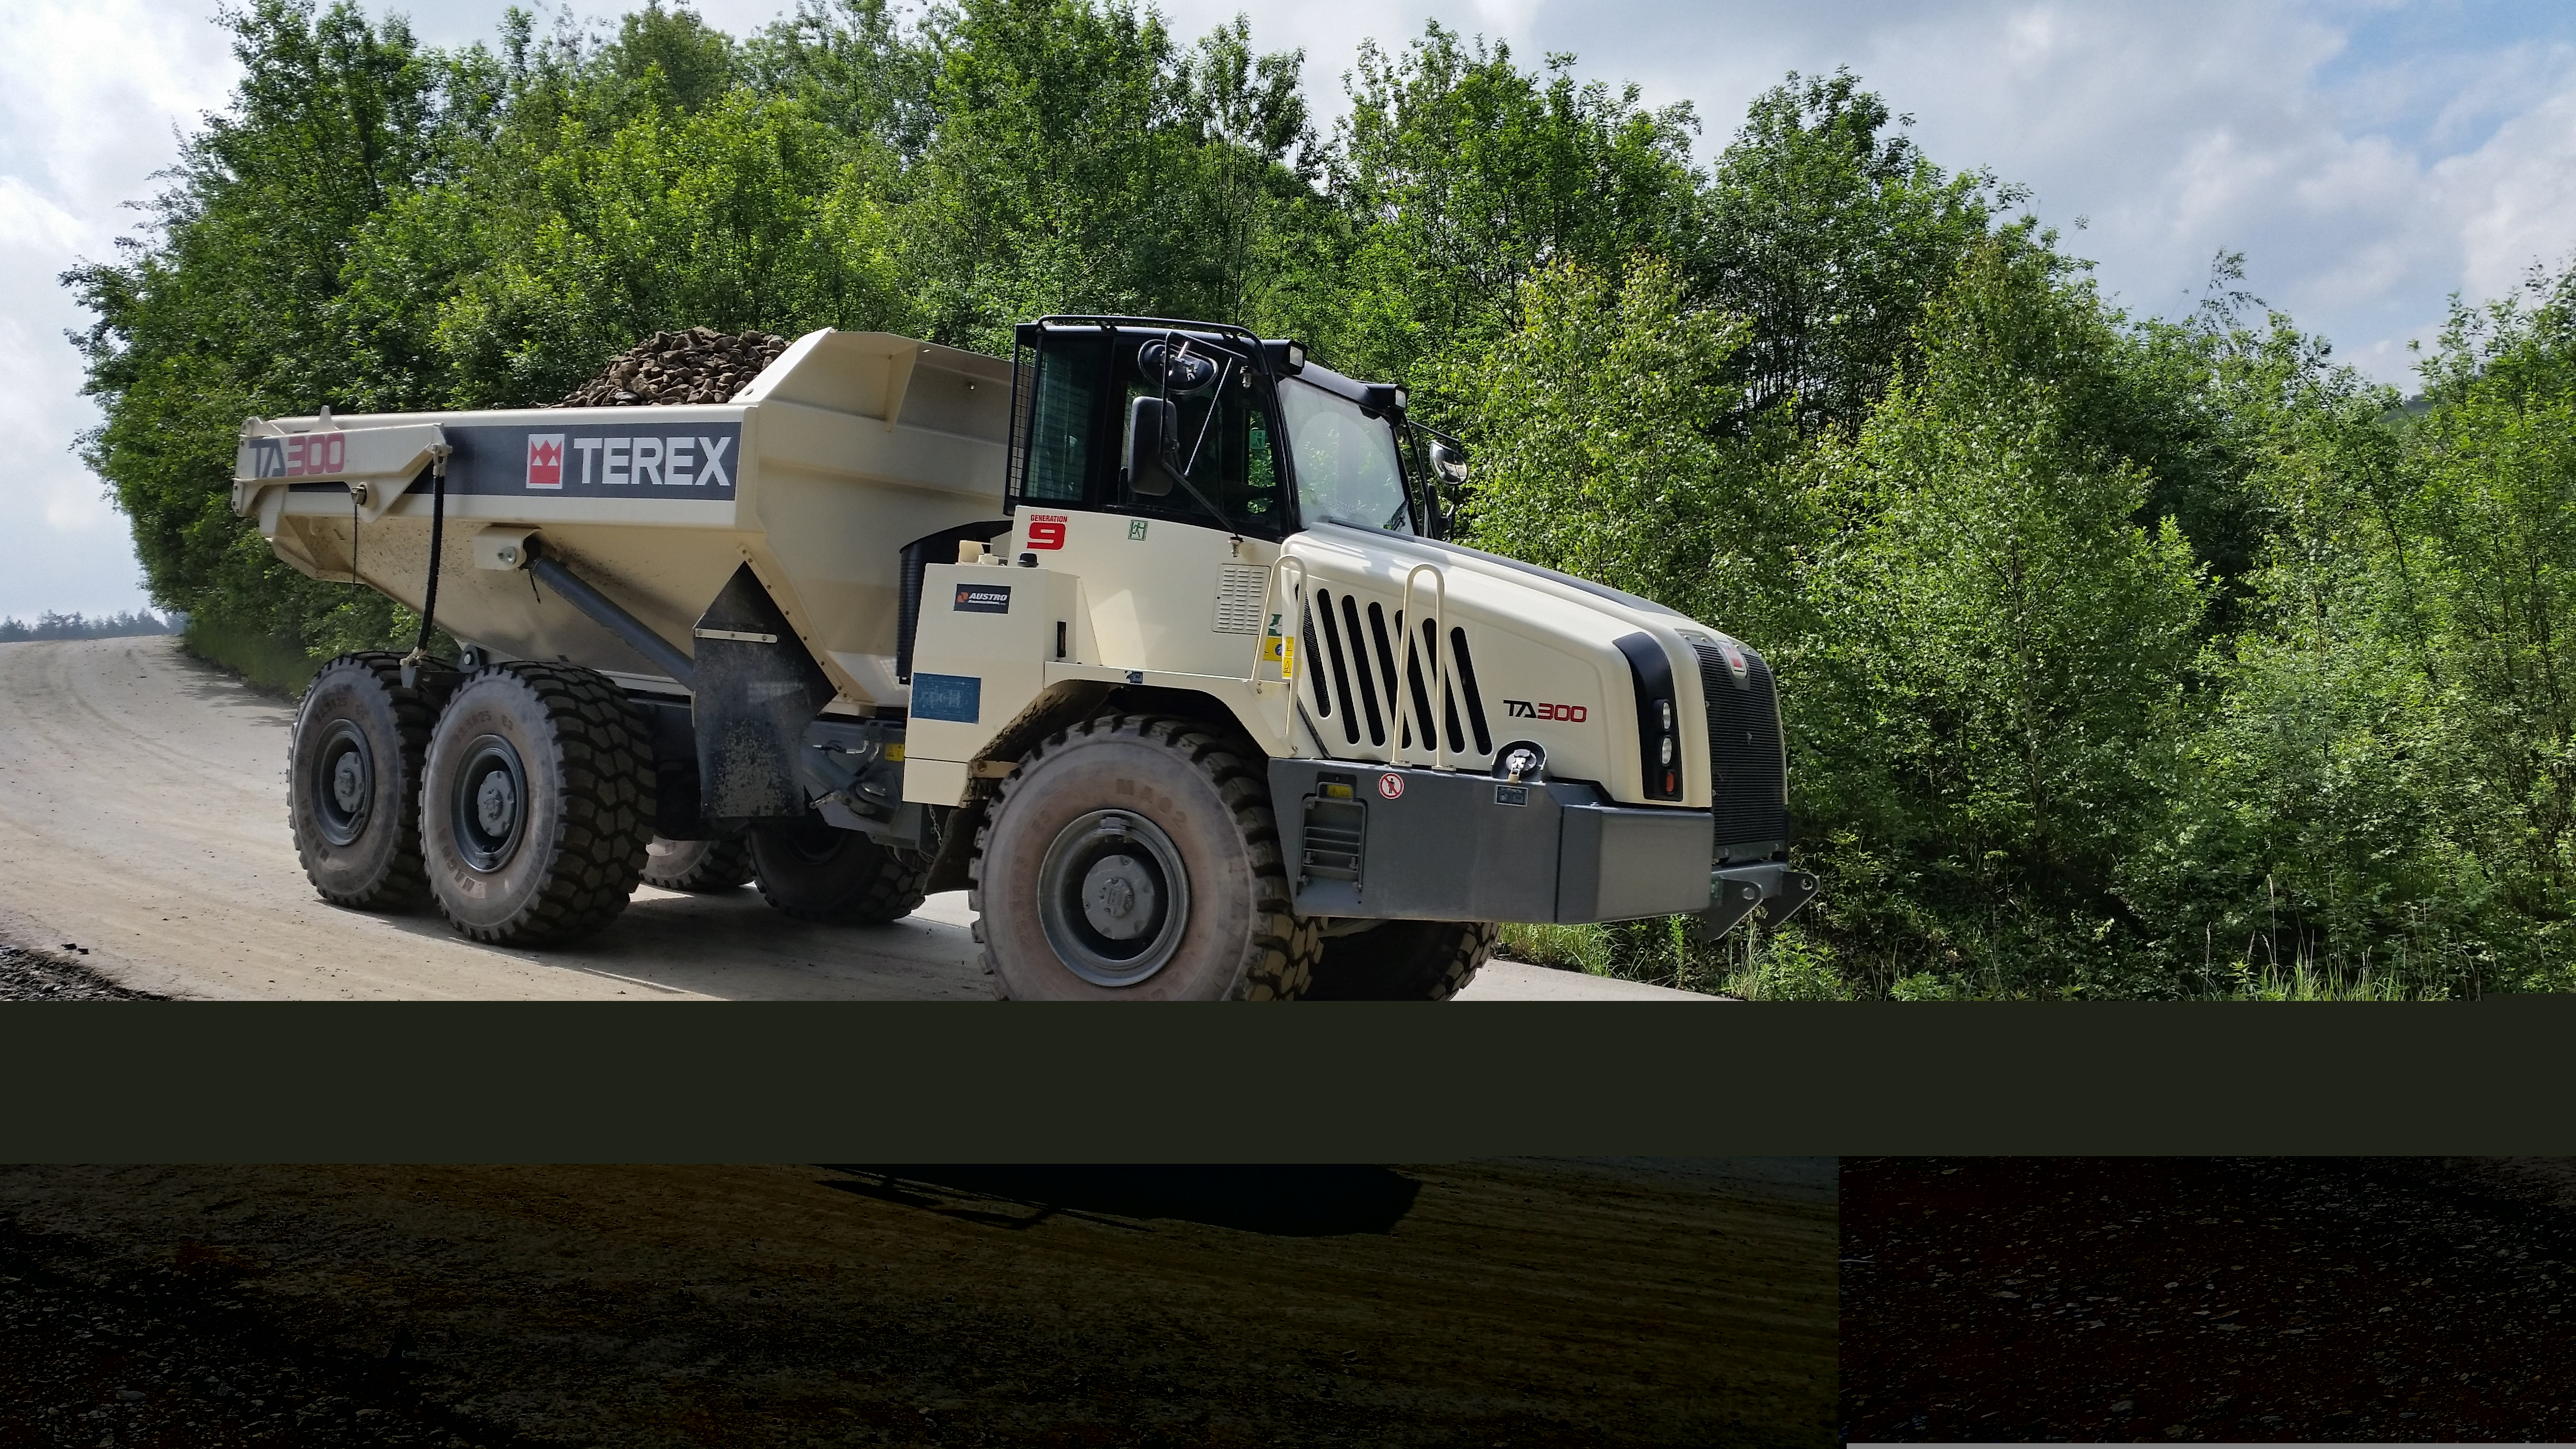 Terex Trucks TA300